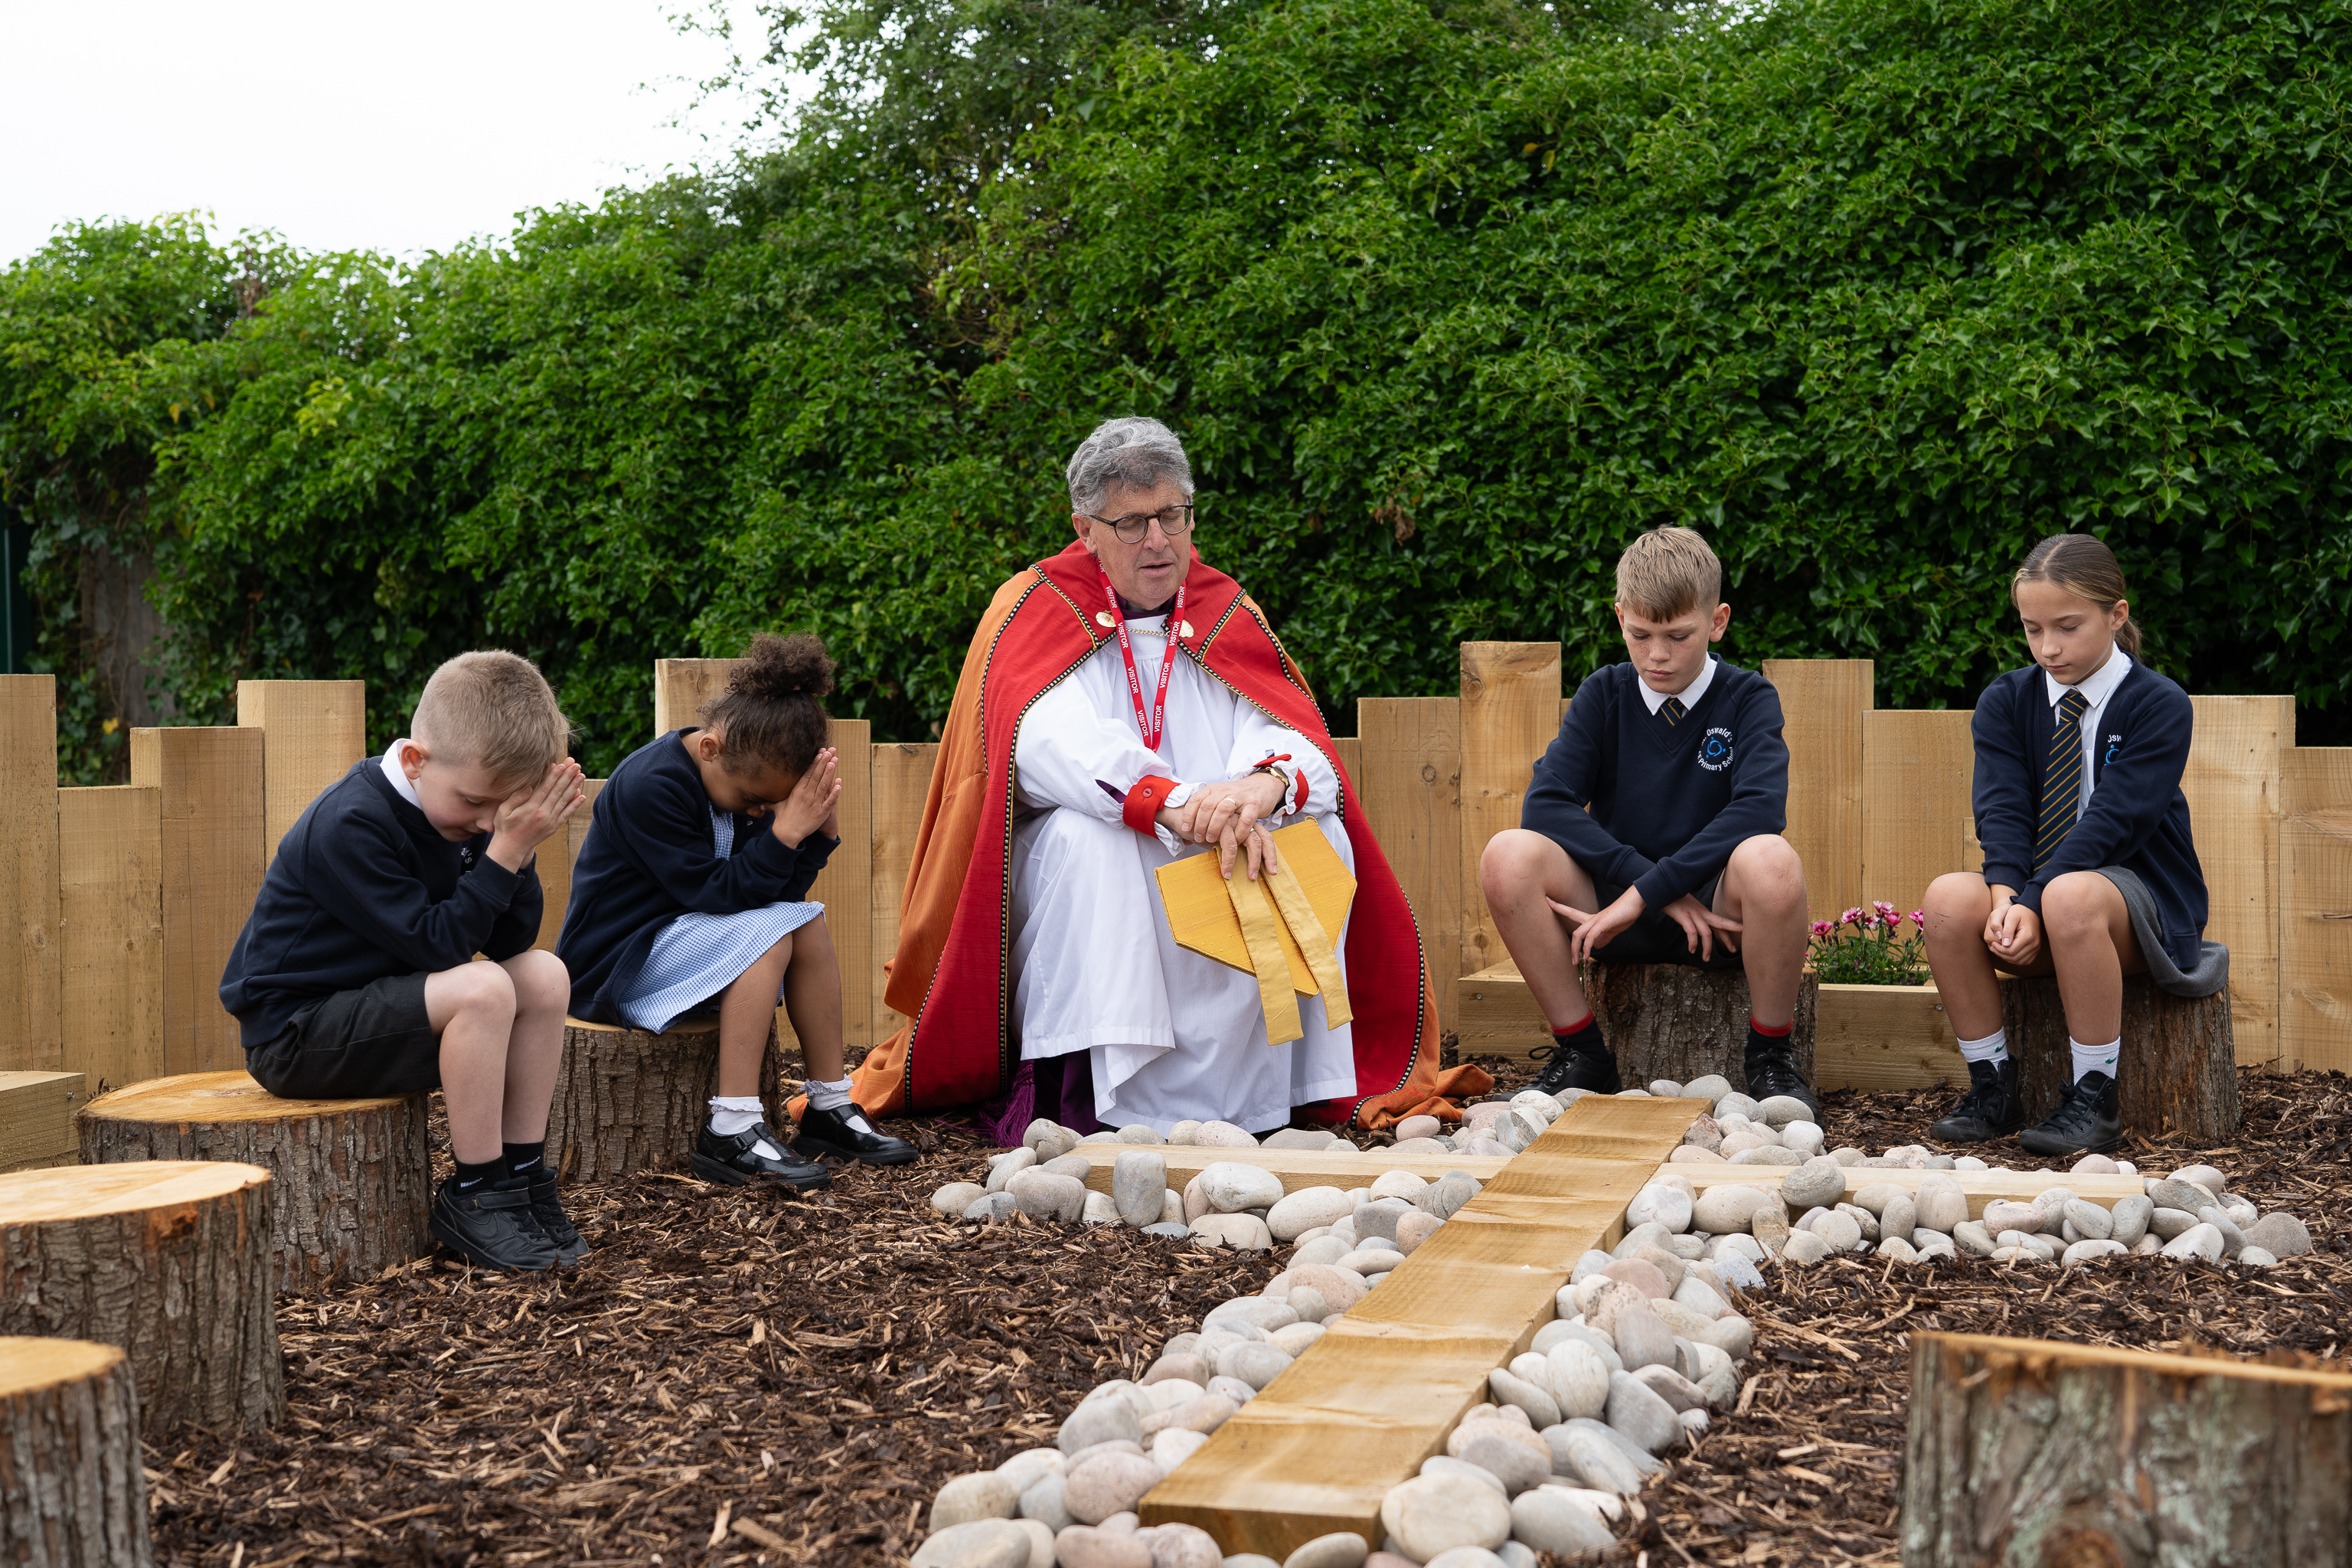 Bishop Martin praying with children in the prayer garden